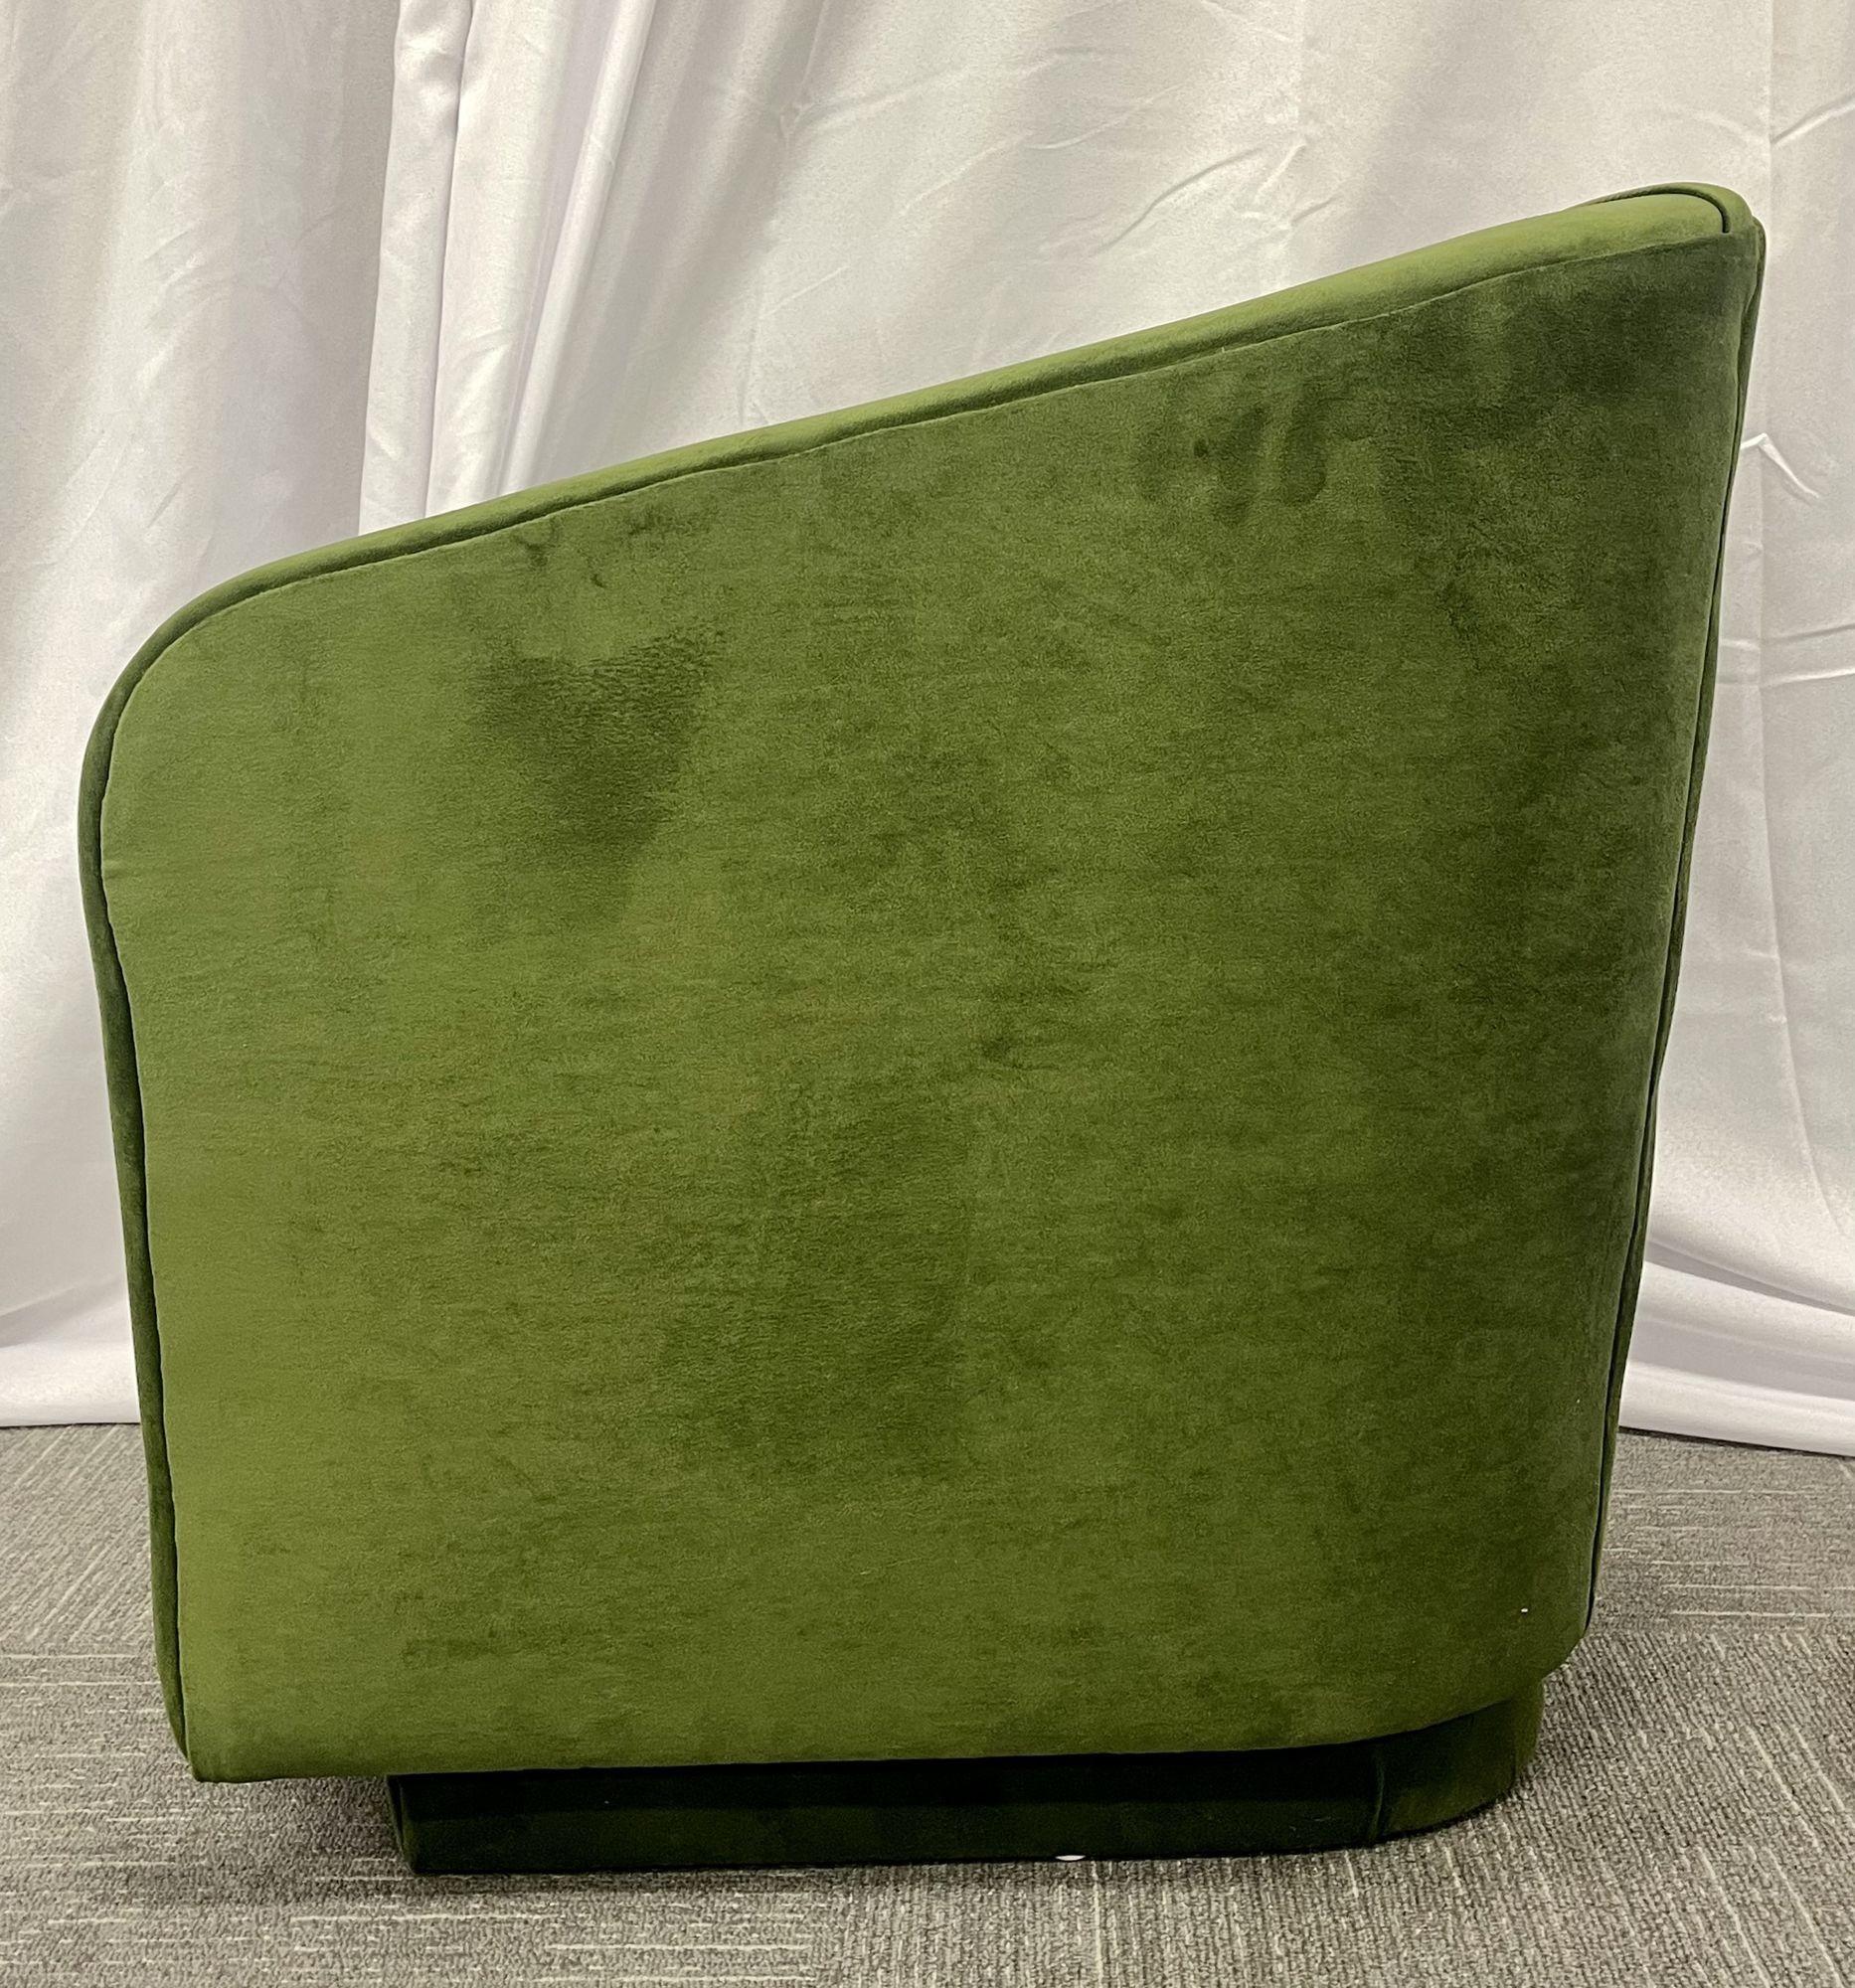 velvet green swivel chair